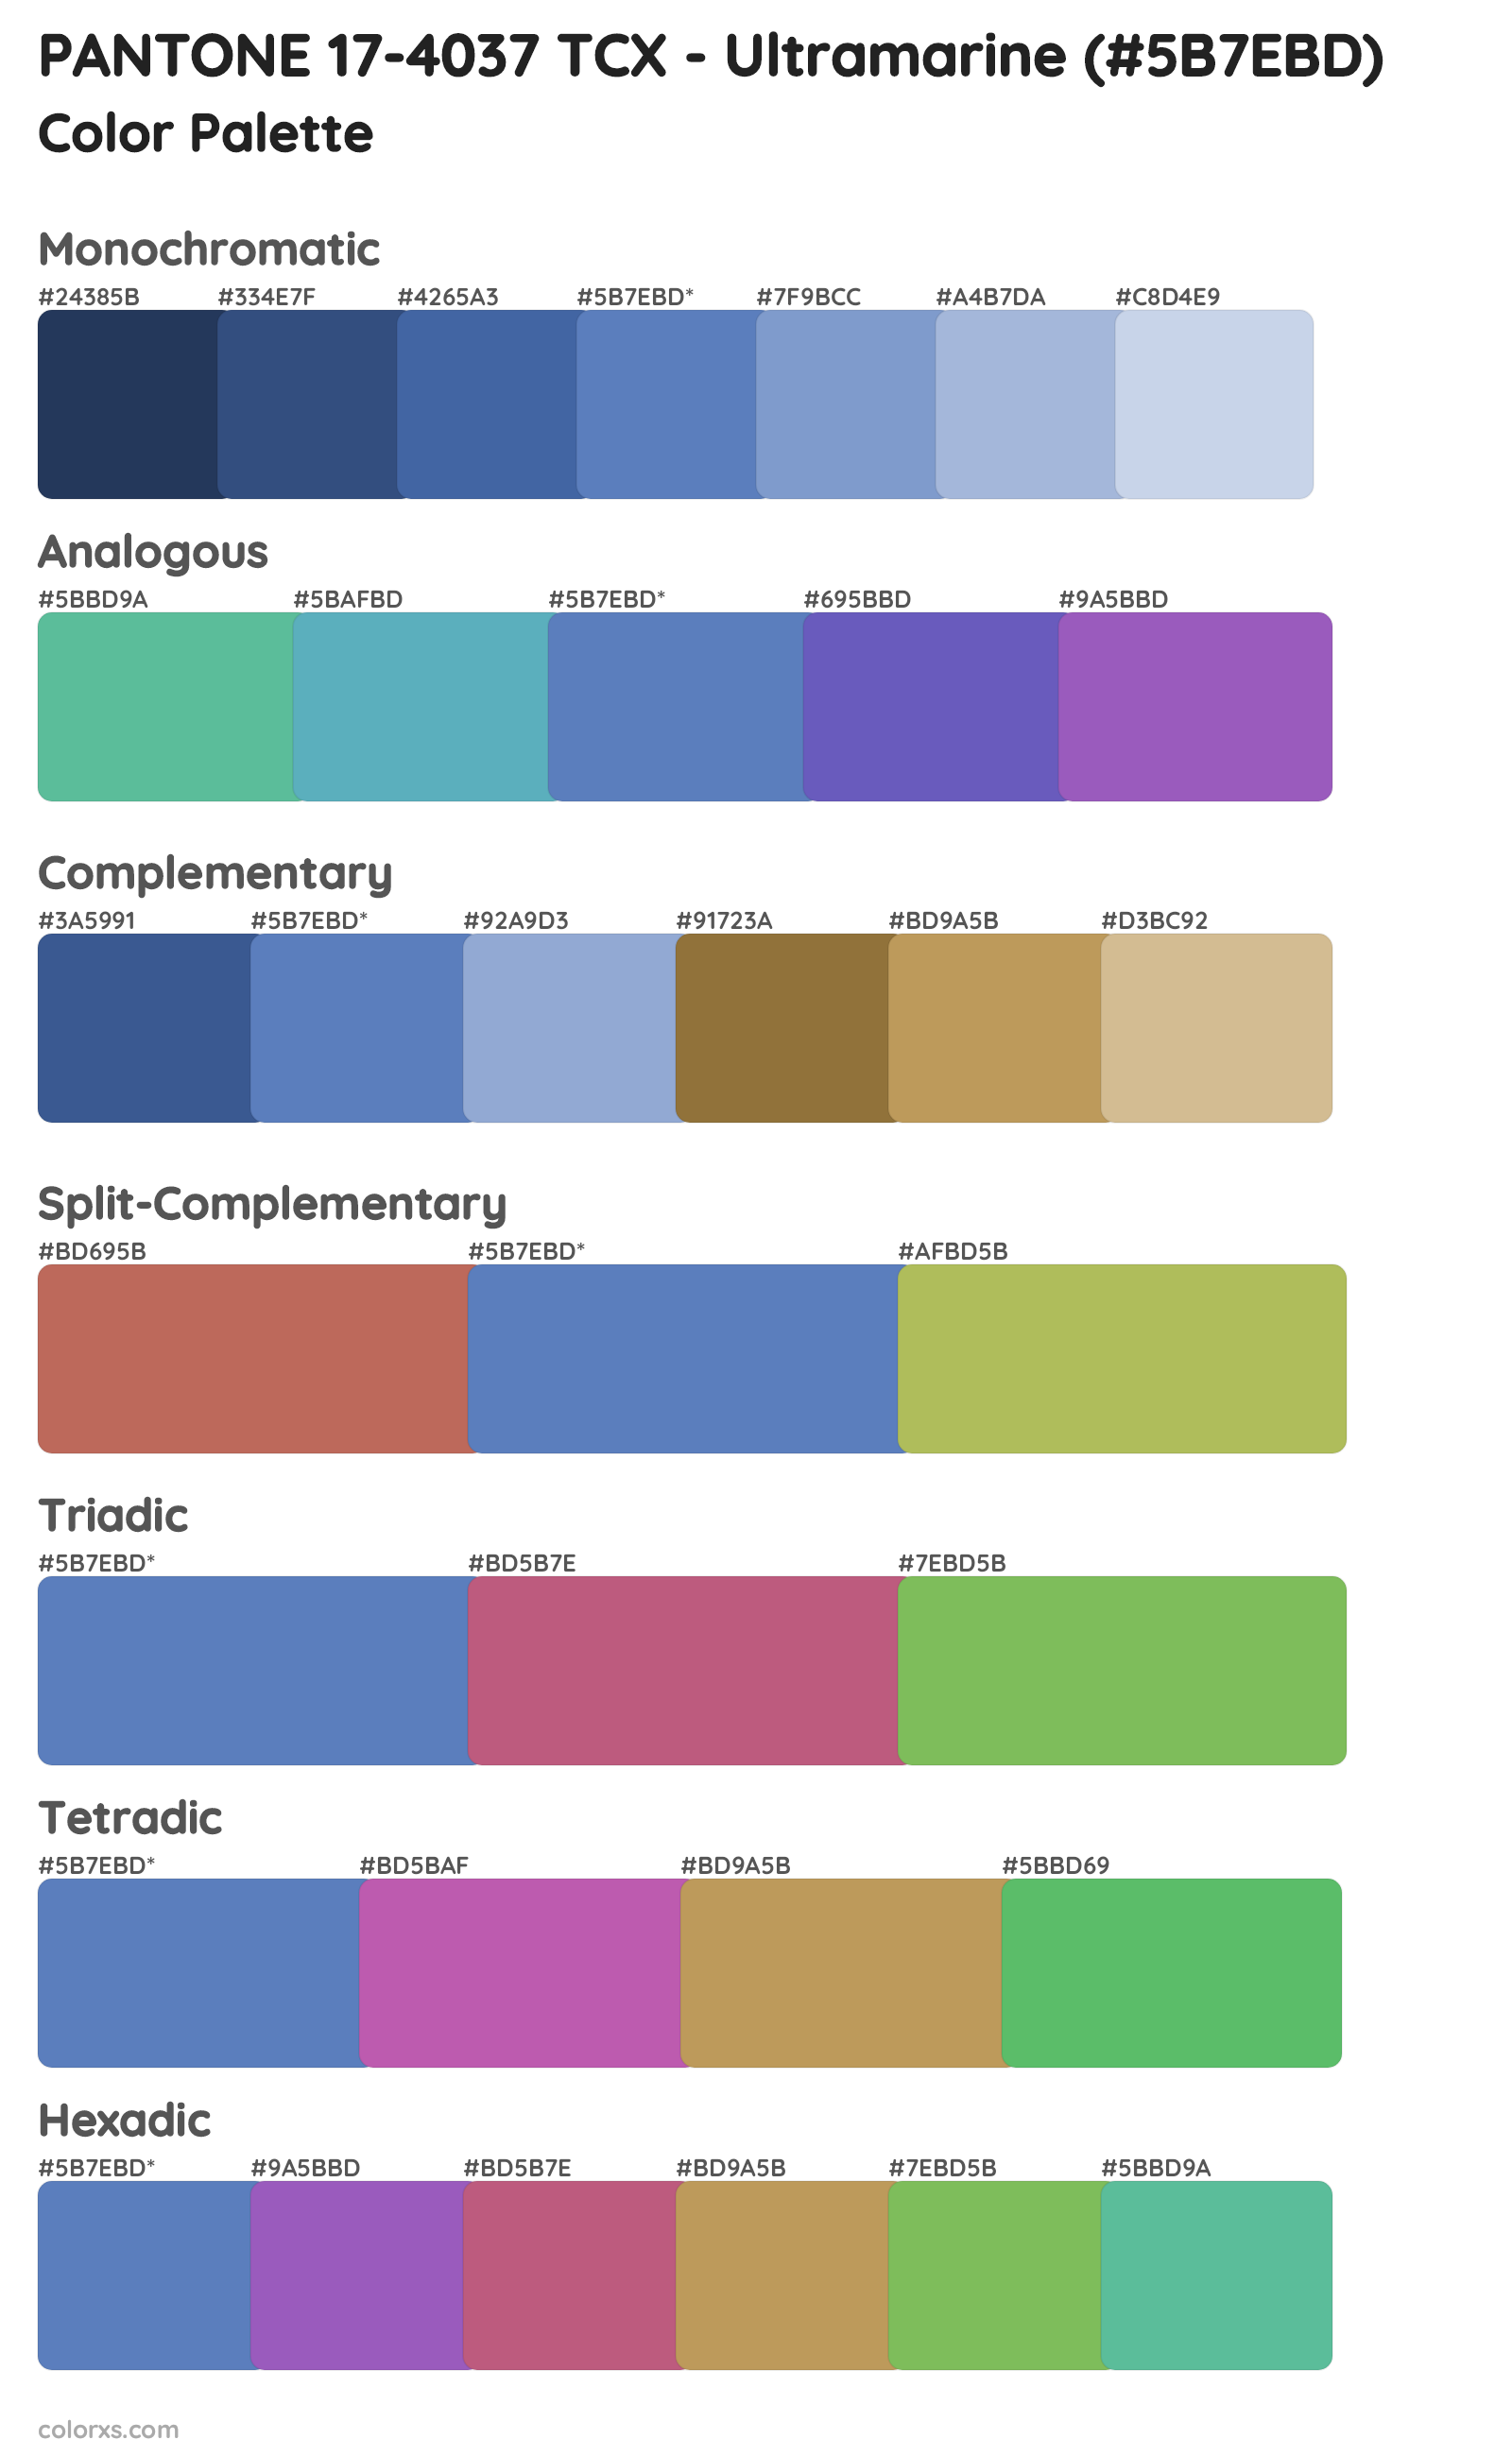 PANTONE 17-4037 TCX - Ultramarine Color Scheme Palettes